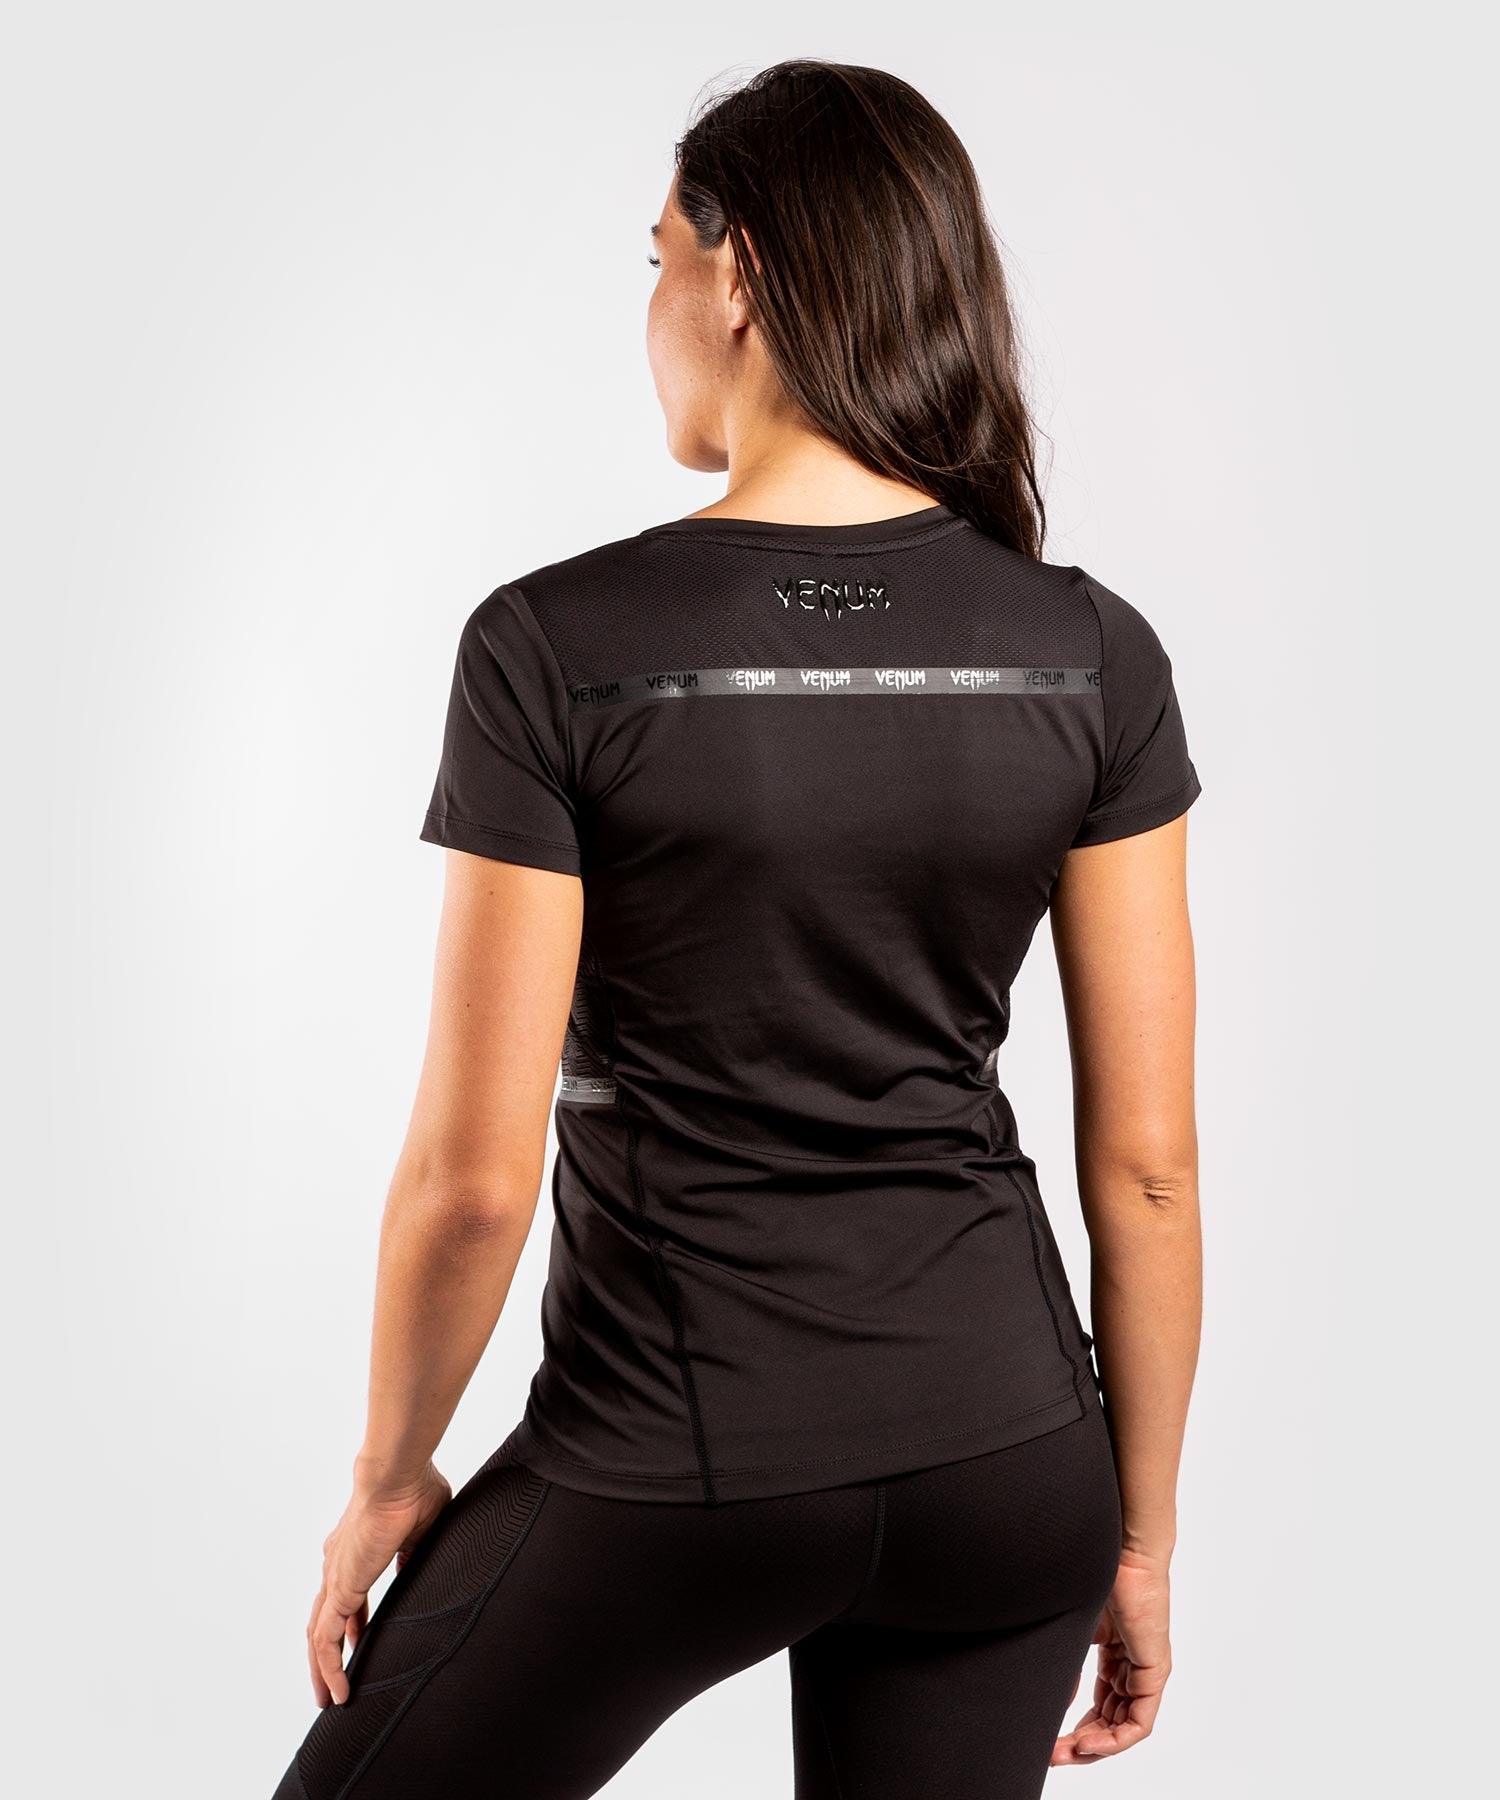 Venum G-Fit Dry-Tech T-shirt - For Women - Black/Black Picture 2